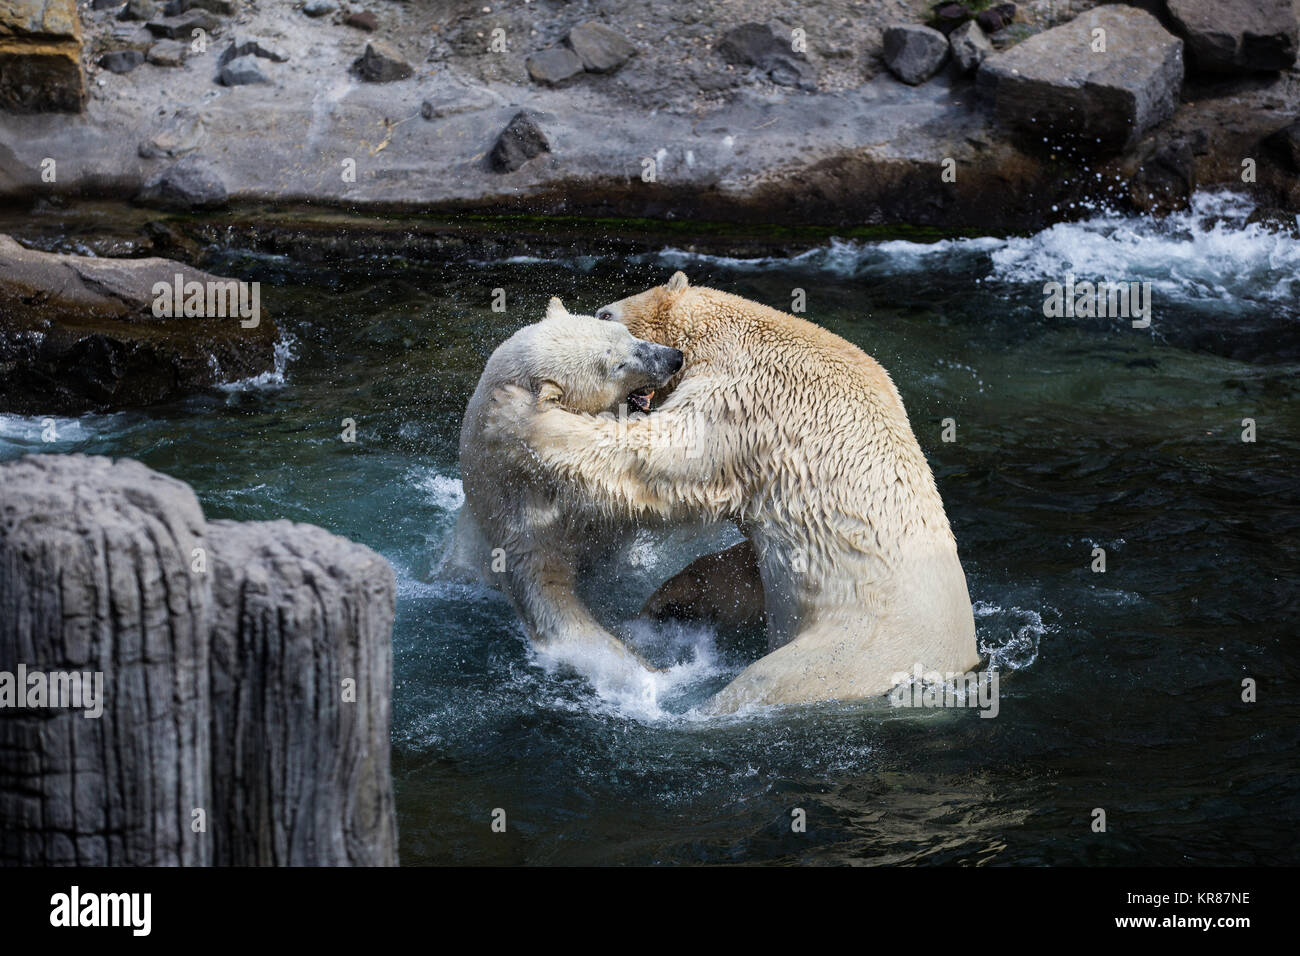 Deux mineurs respectivement 500kg des ours polaires à jouer dans la lutte contre Hanovre zoo aventure Banque D'Images